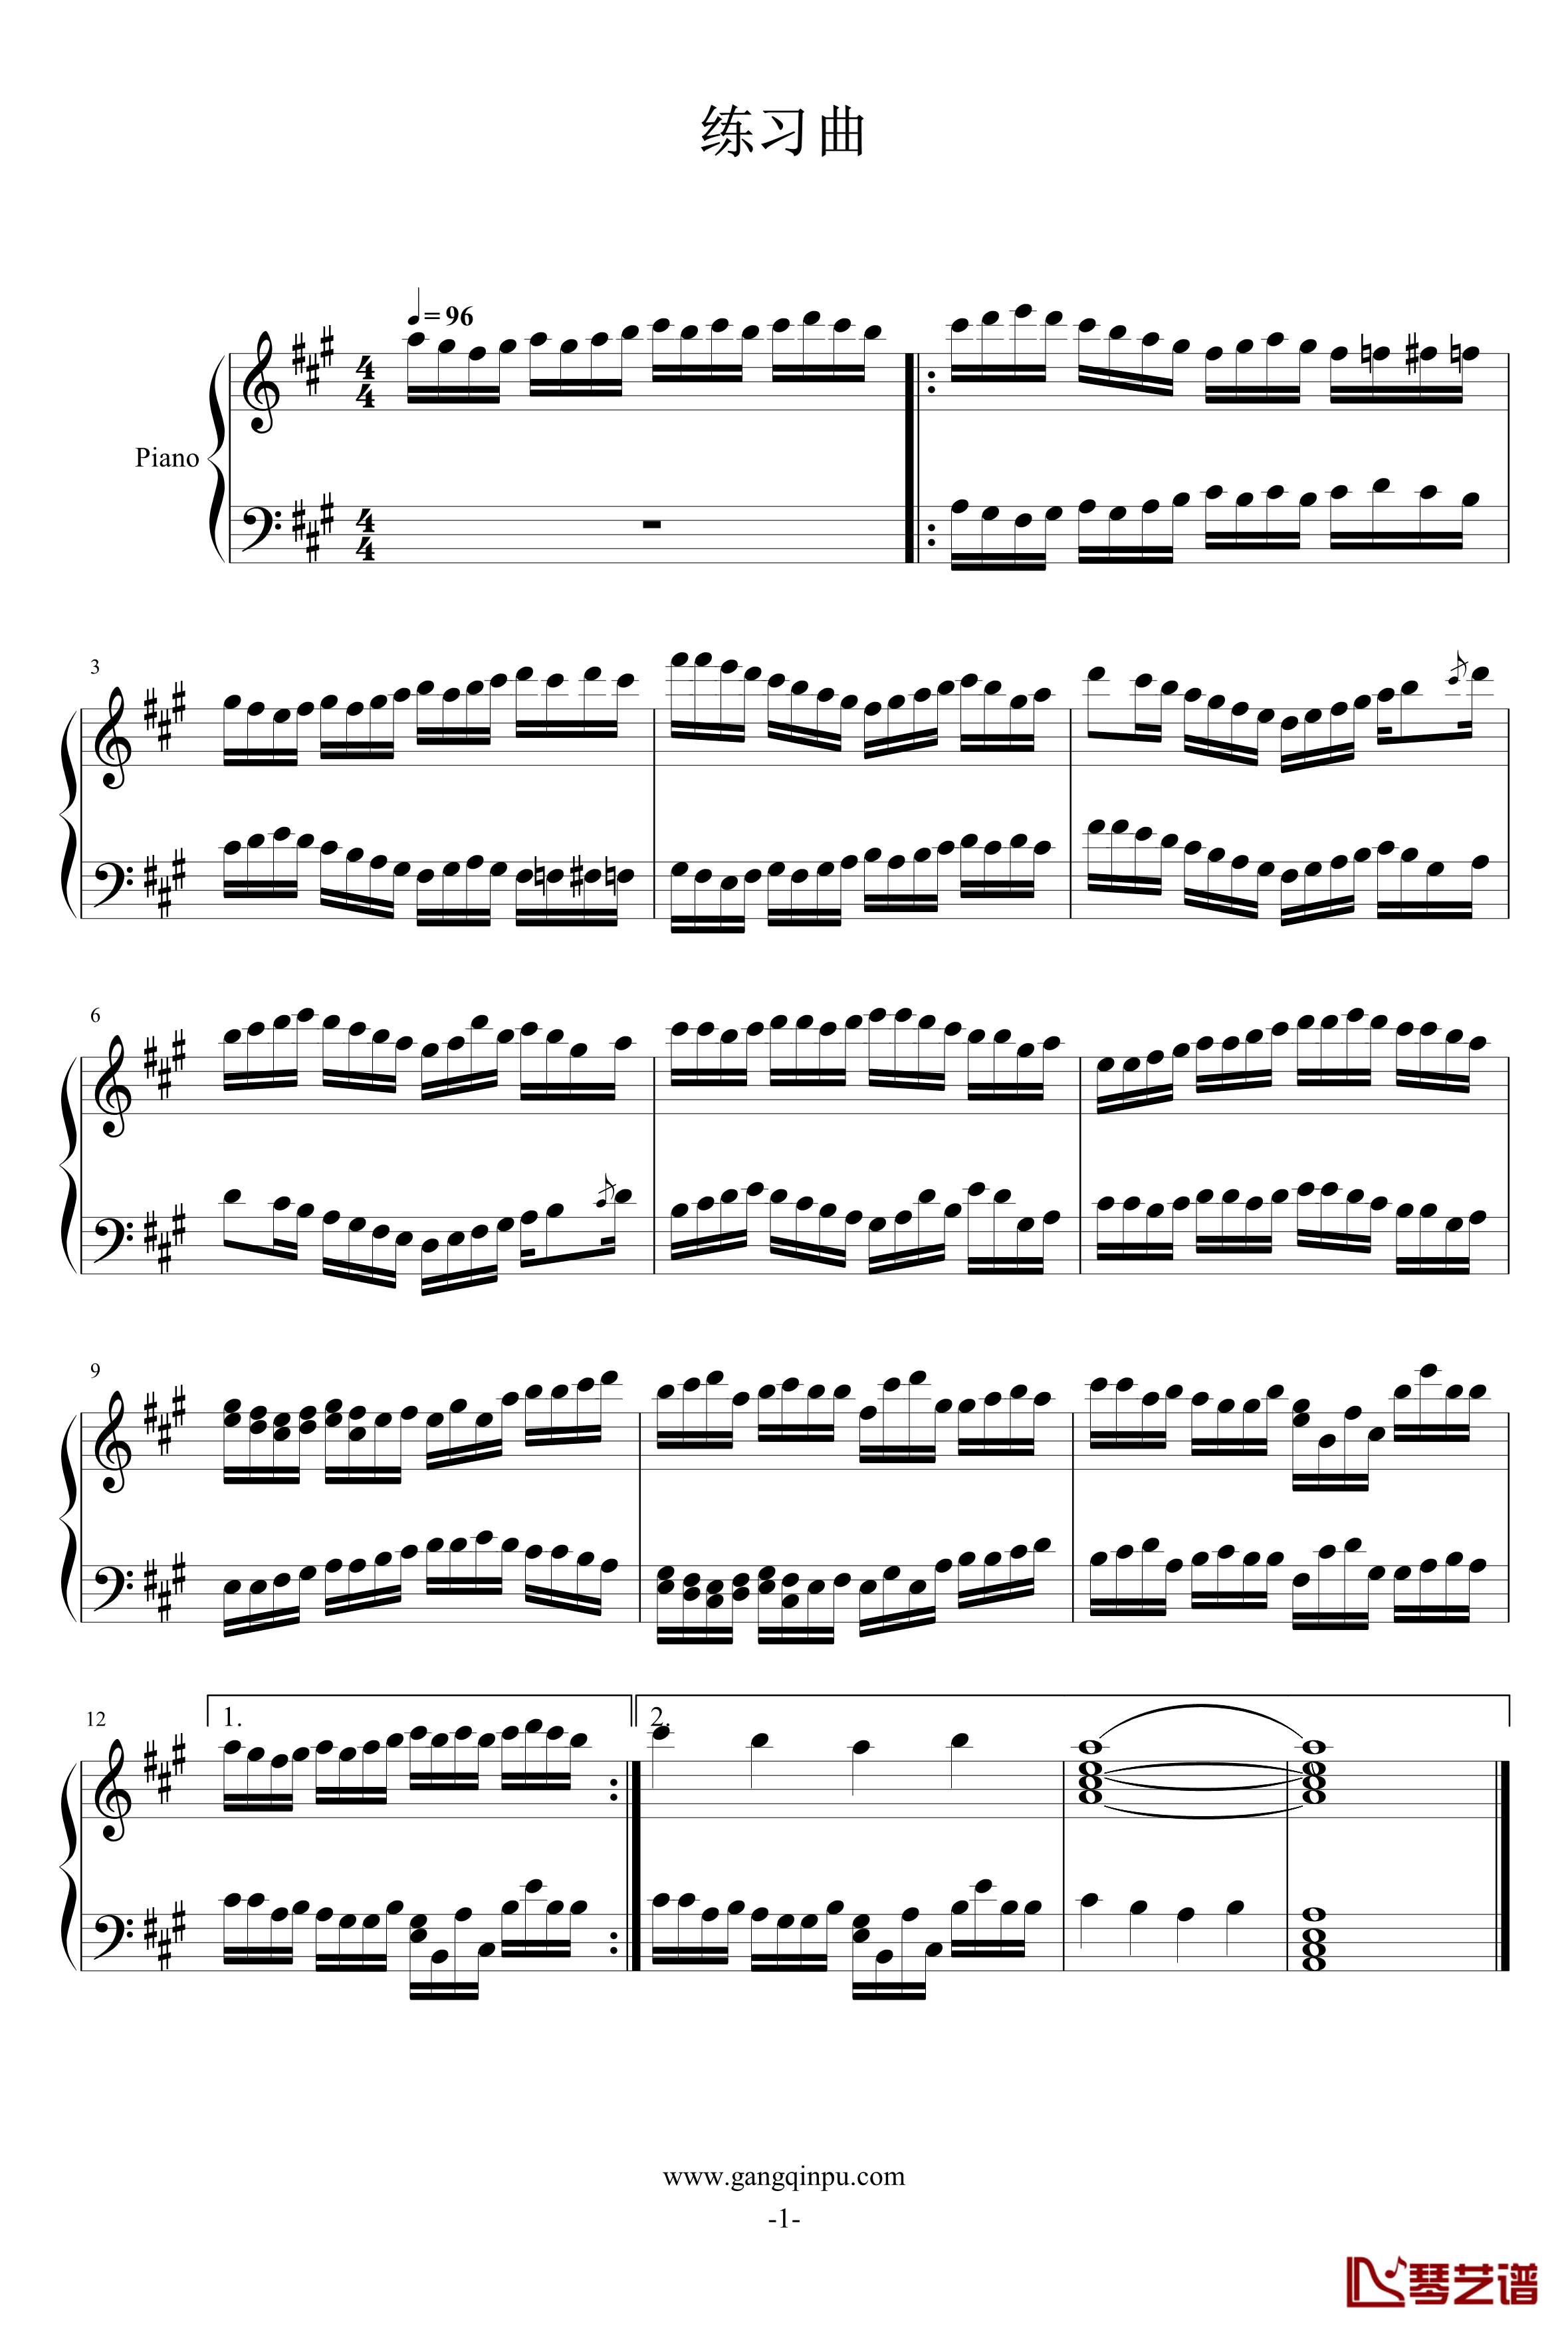 练习曲钢琴谱-lolaikia1